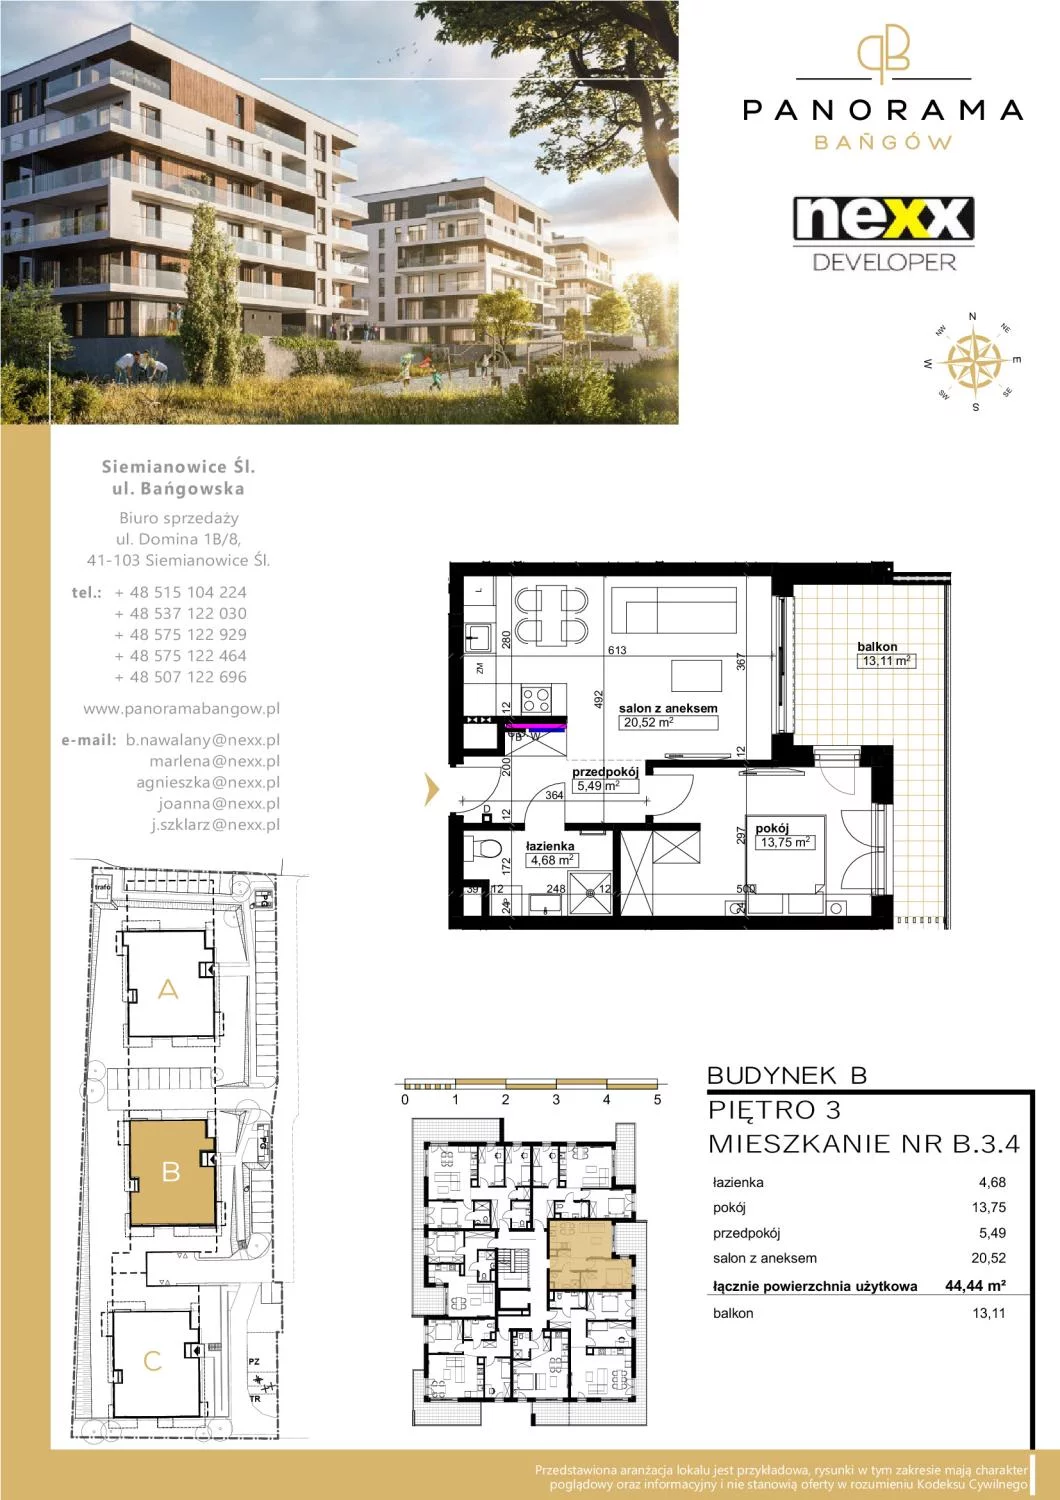 Mieszkanie 44,44 m², piętro 3, oferta nr B 3.4, Panorama Bańgów, Siemianowice Śląskie, Bańgów, ul. Bańgowska